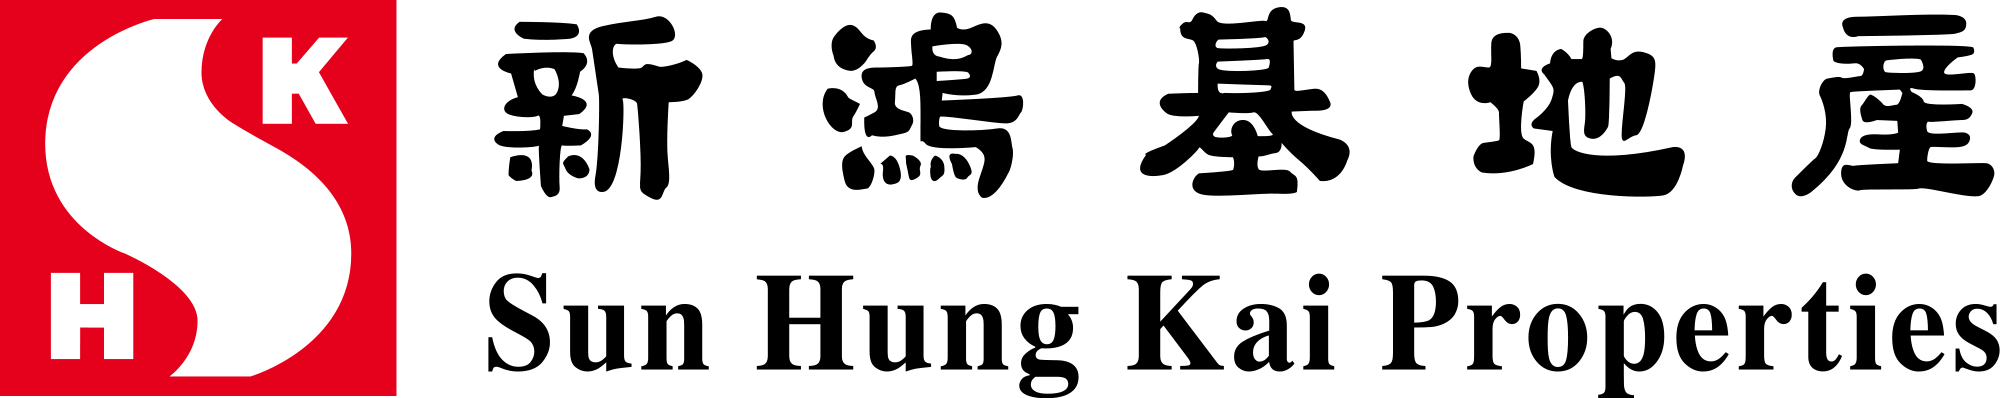 SHKP Logo